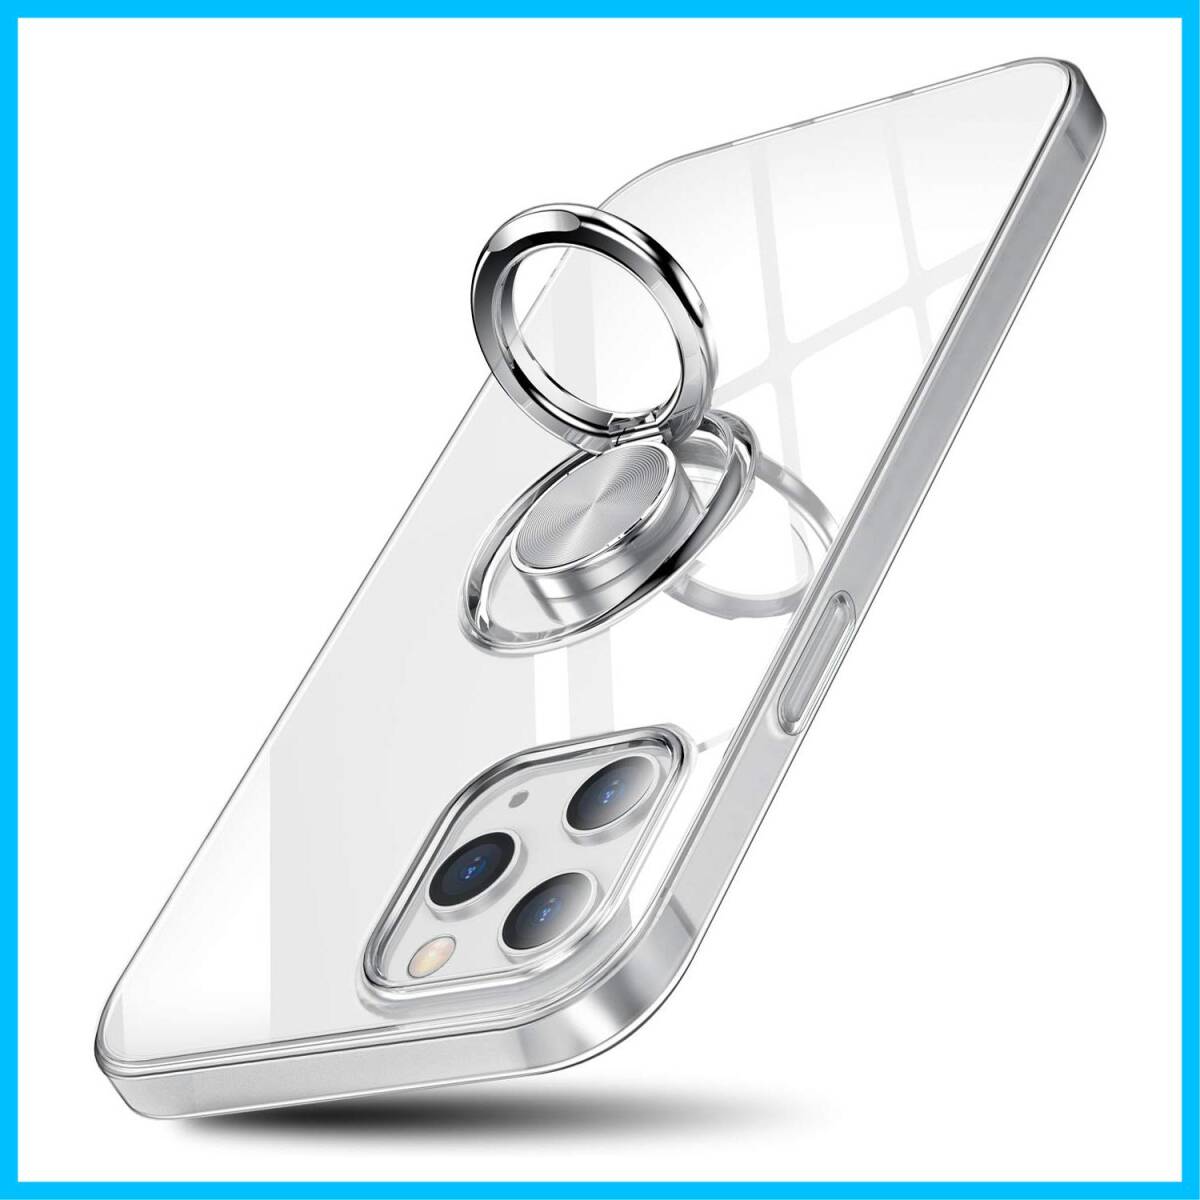 【特価商品】OURJOY iPhone12 Pro ケース リング付き iPhone 12 対応 6.1インチ スマホケース アイ_画像1